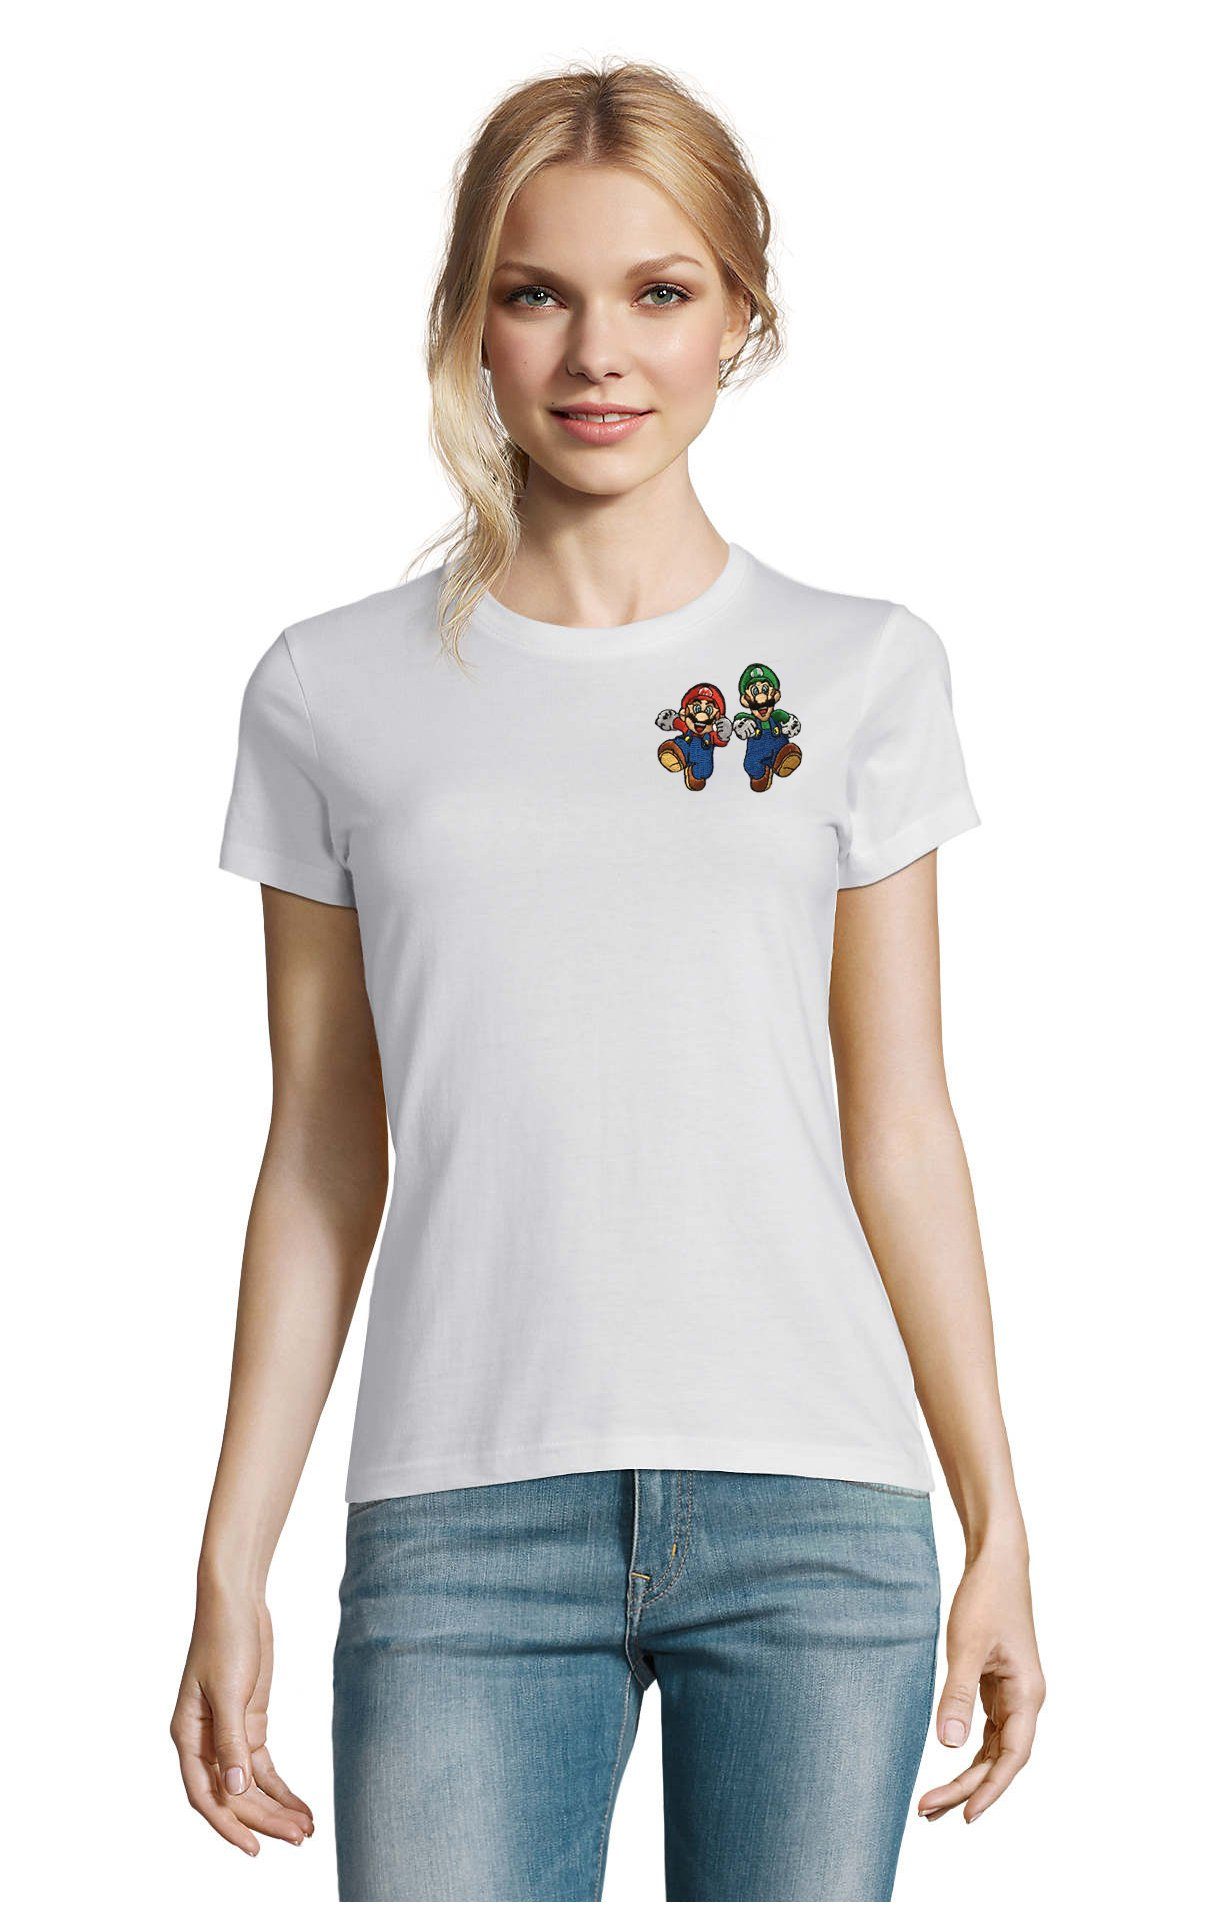 Blondie & Brownie T-Shirt Damen Mario & Luigi Brust Stick Yoshi Bowser Nintendo Gaming bestickt Weiß